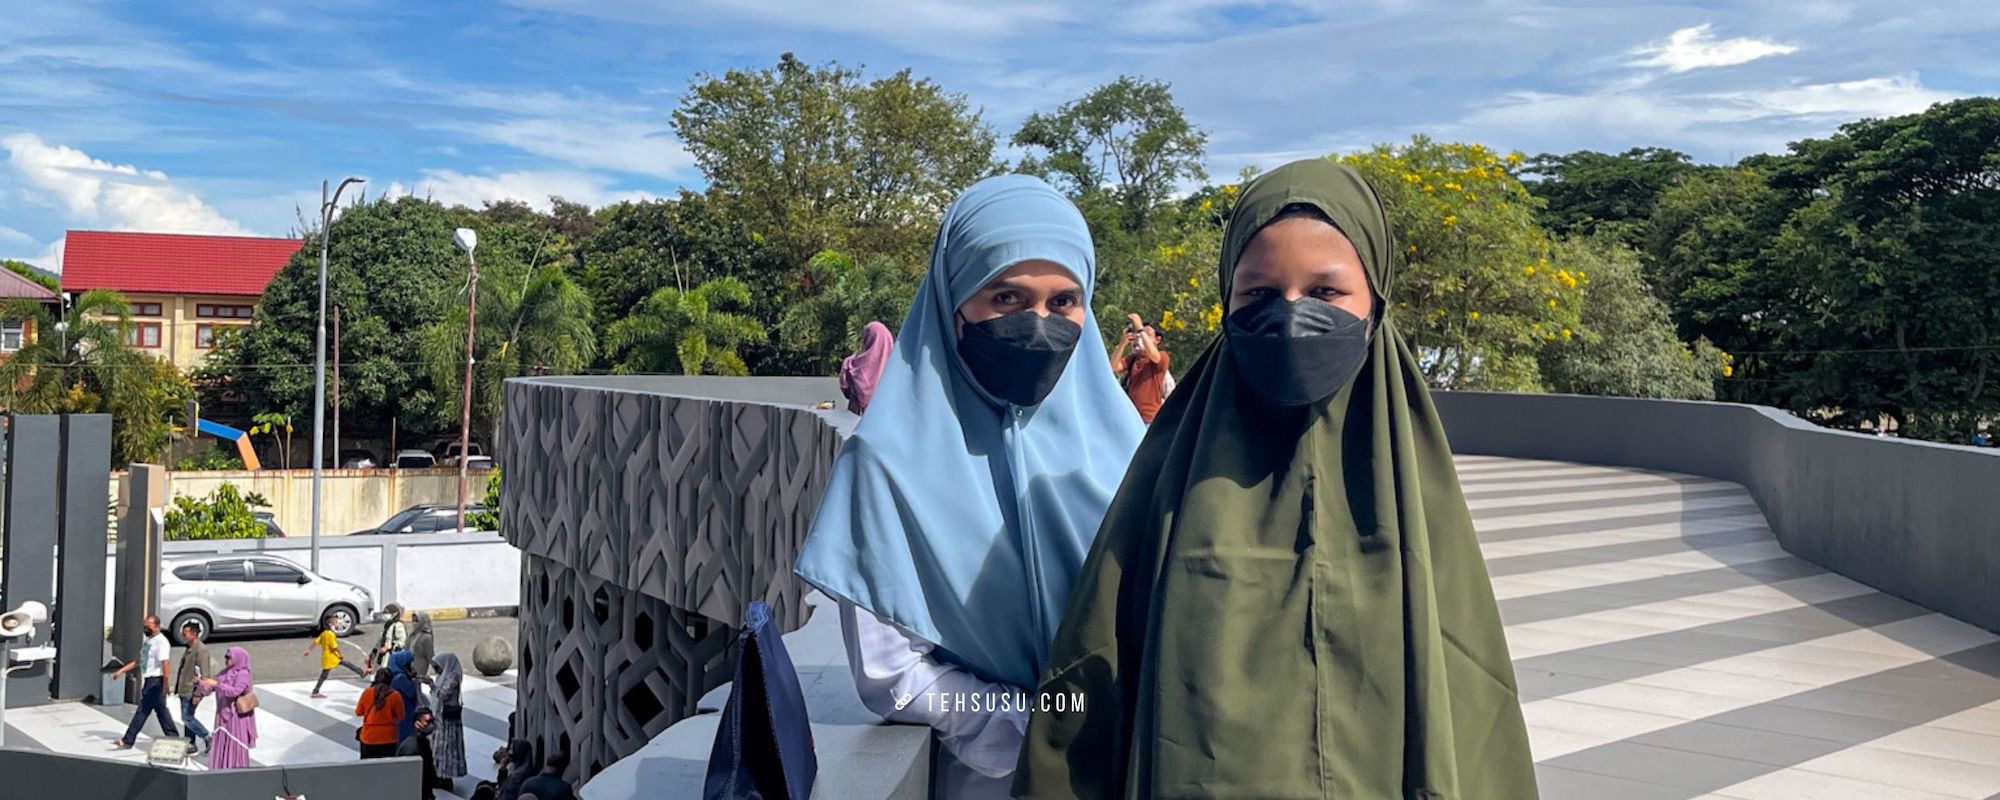 Liburan ke Aceh Sama Vay, Perjalanan Singkat Tapi Padat